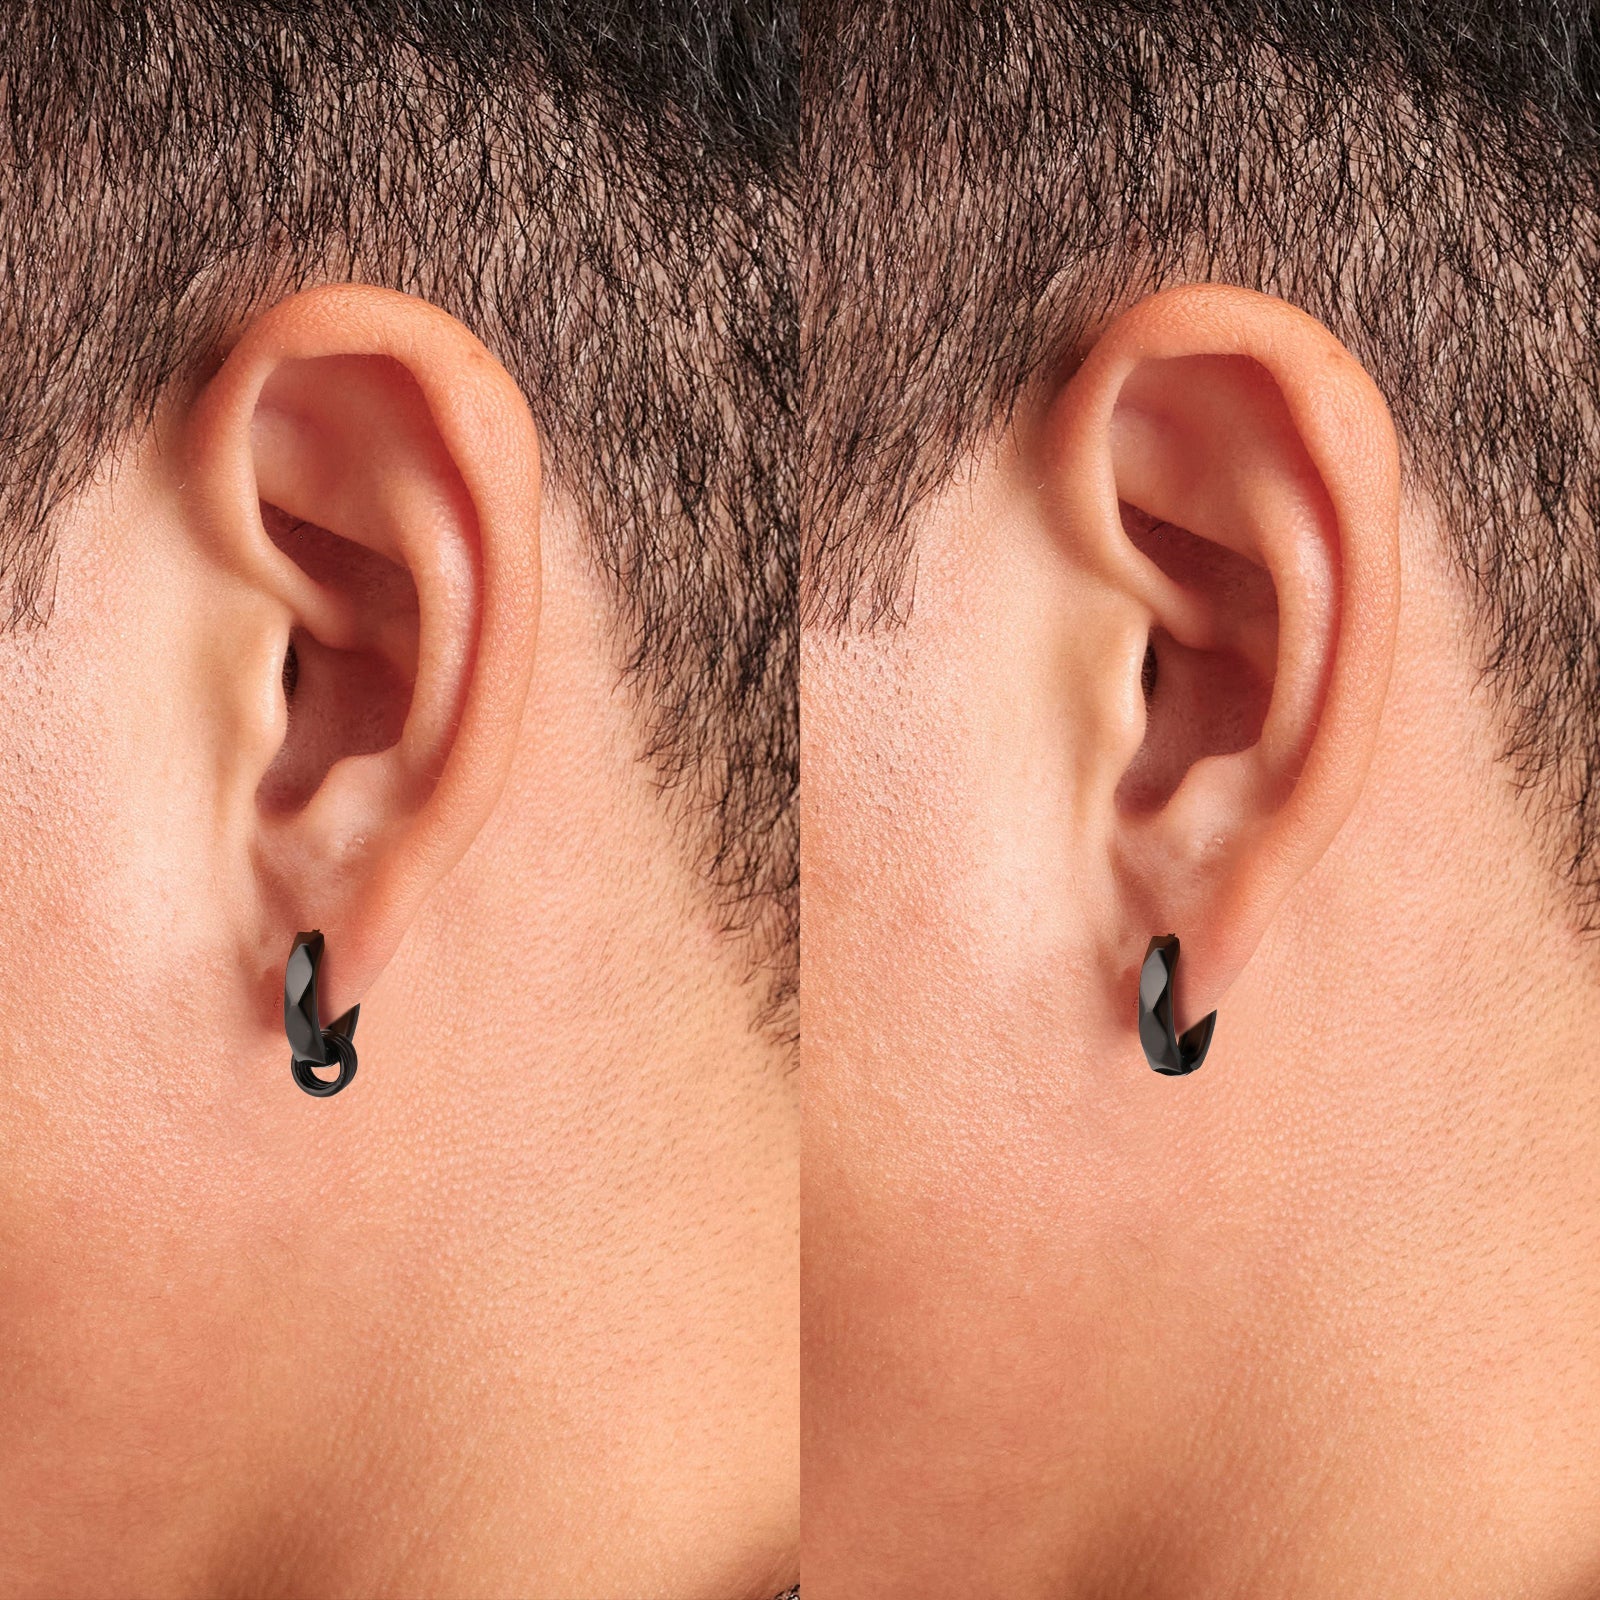 Wholesale Men's Earrings 15mm 2in1 Black Mens Hoop Earring with Detachable Rings 925 Sterling Silver